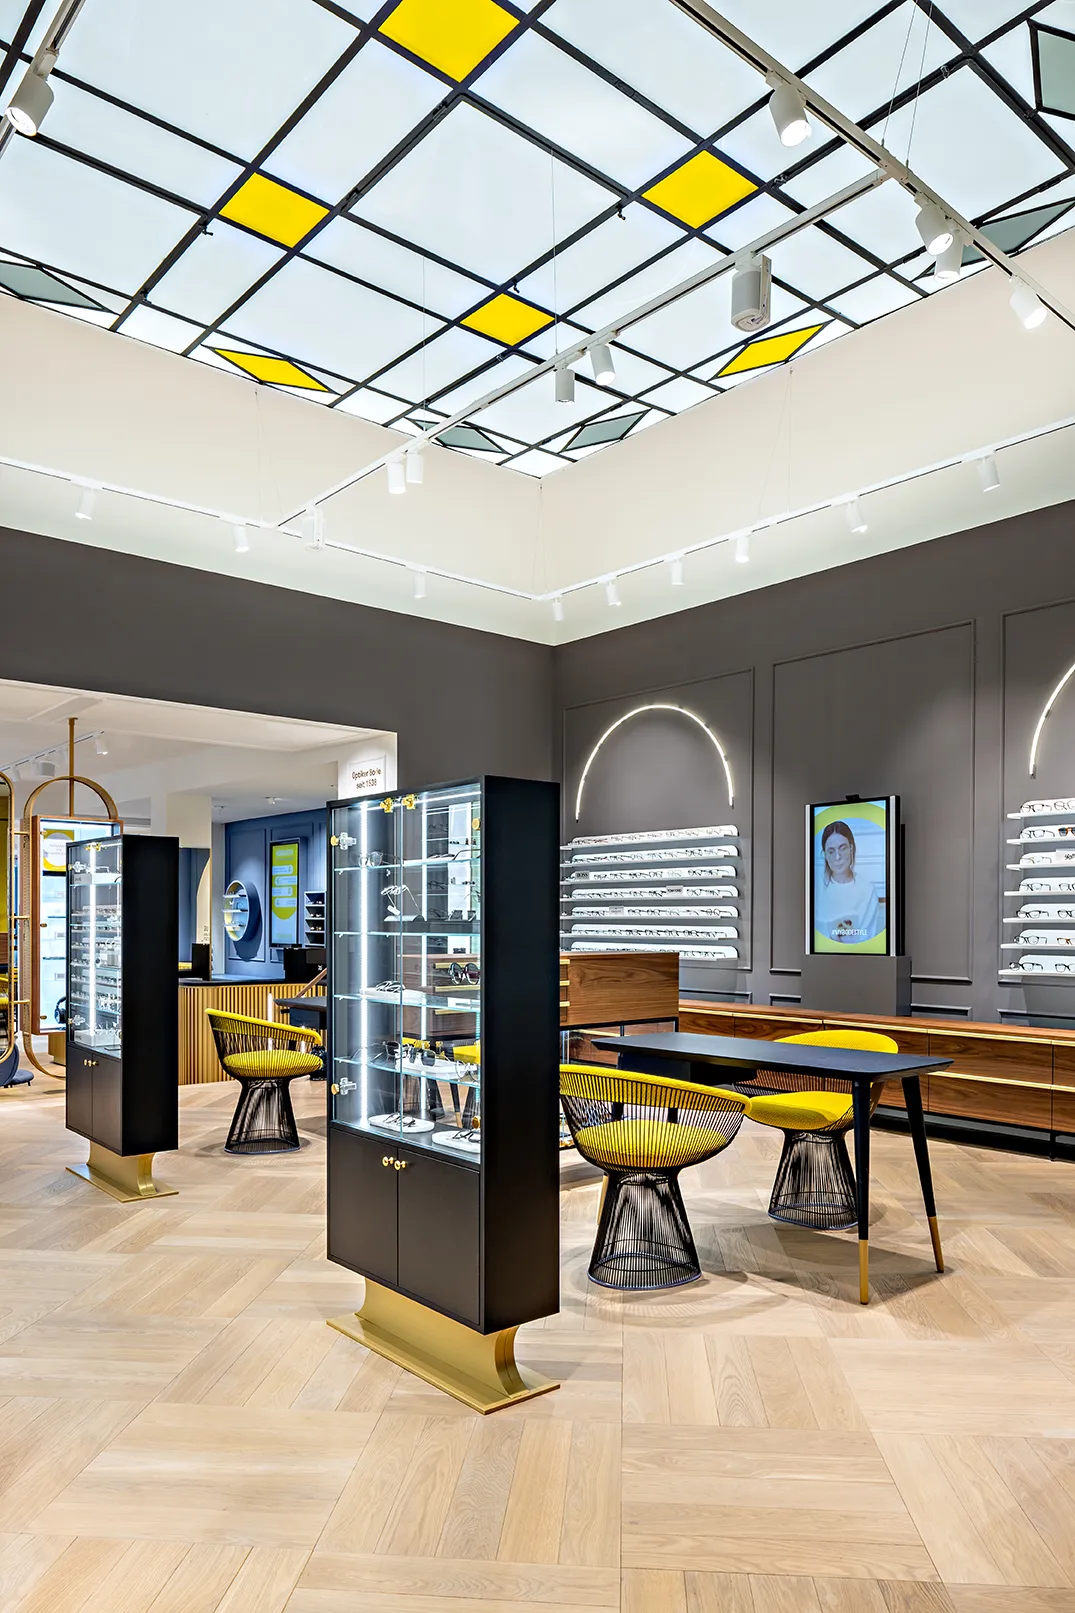 Innenaufnahme des Optiker Bode Stores in Hamburg mit Blick auf die Deckengestaltung